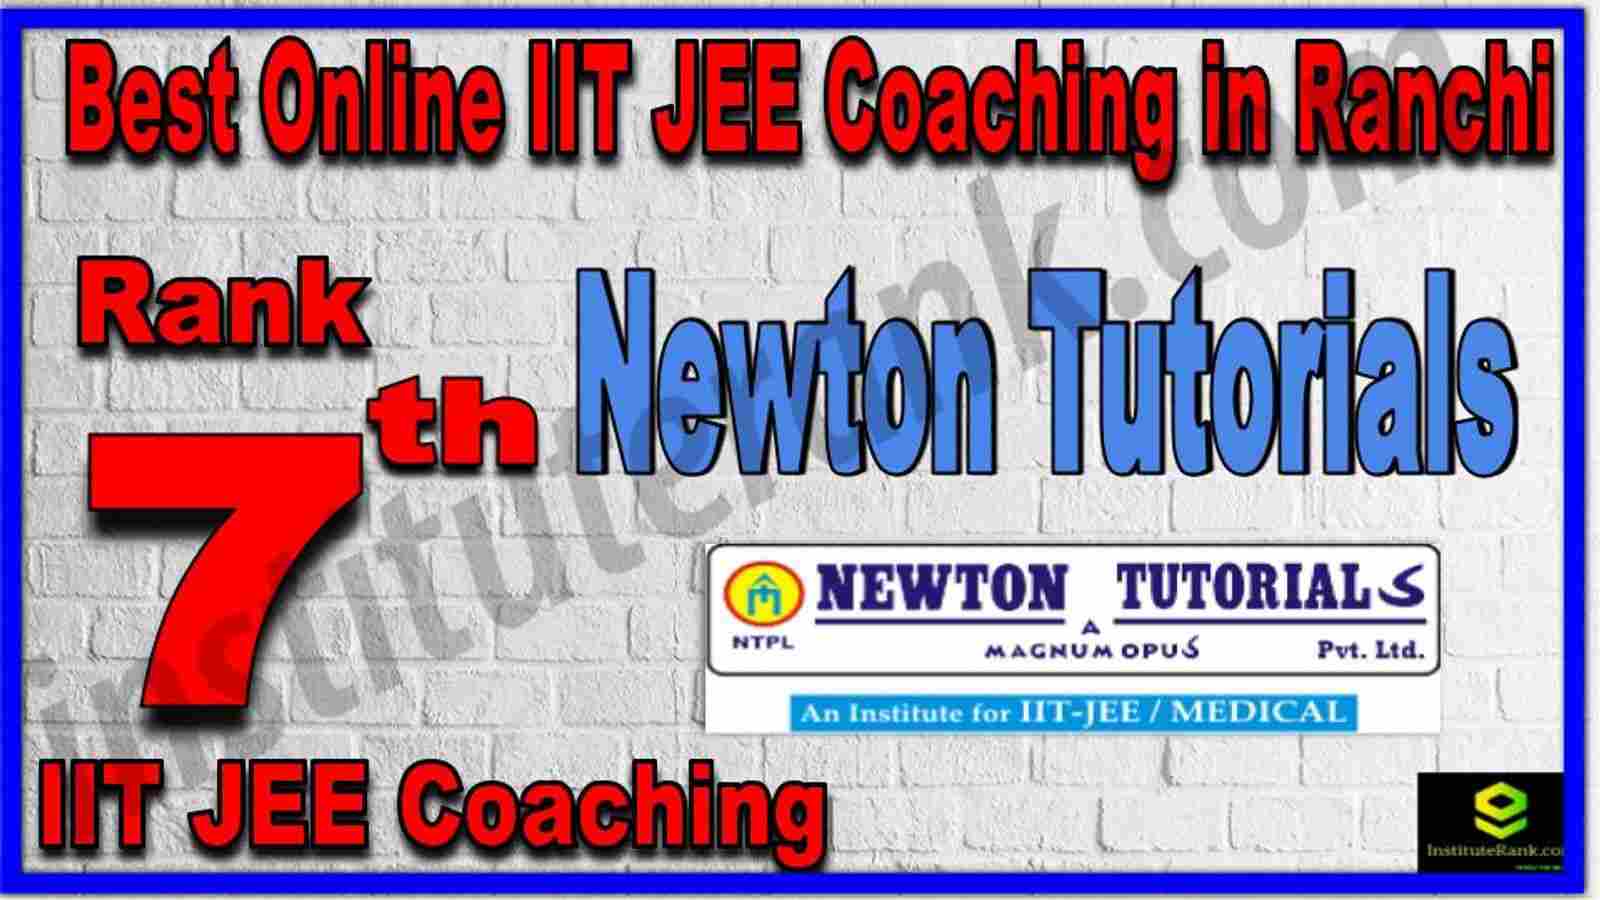 Rank 7th Best Online IIT JEE Coaching in Ranchi